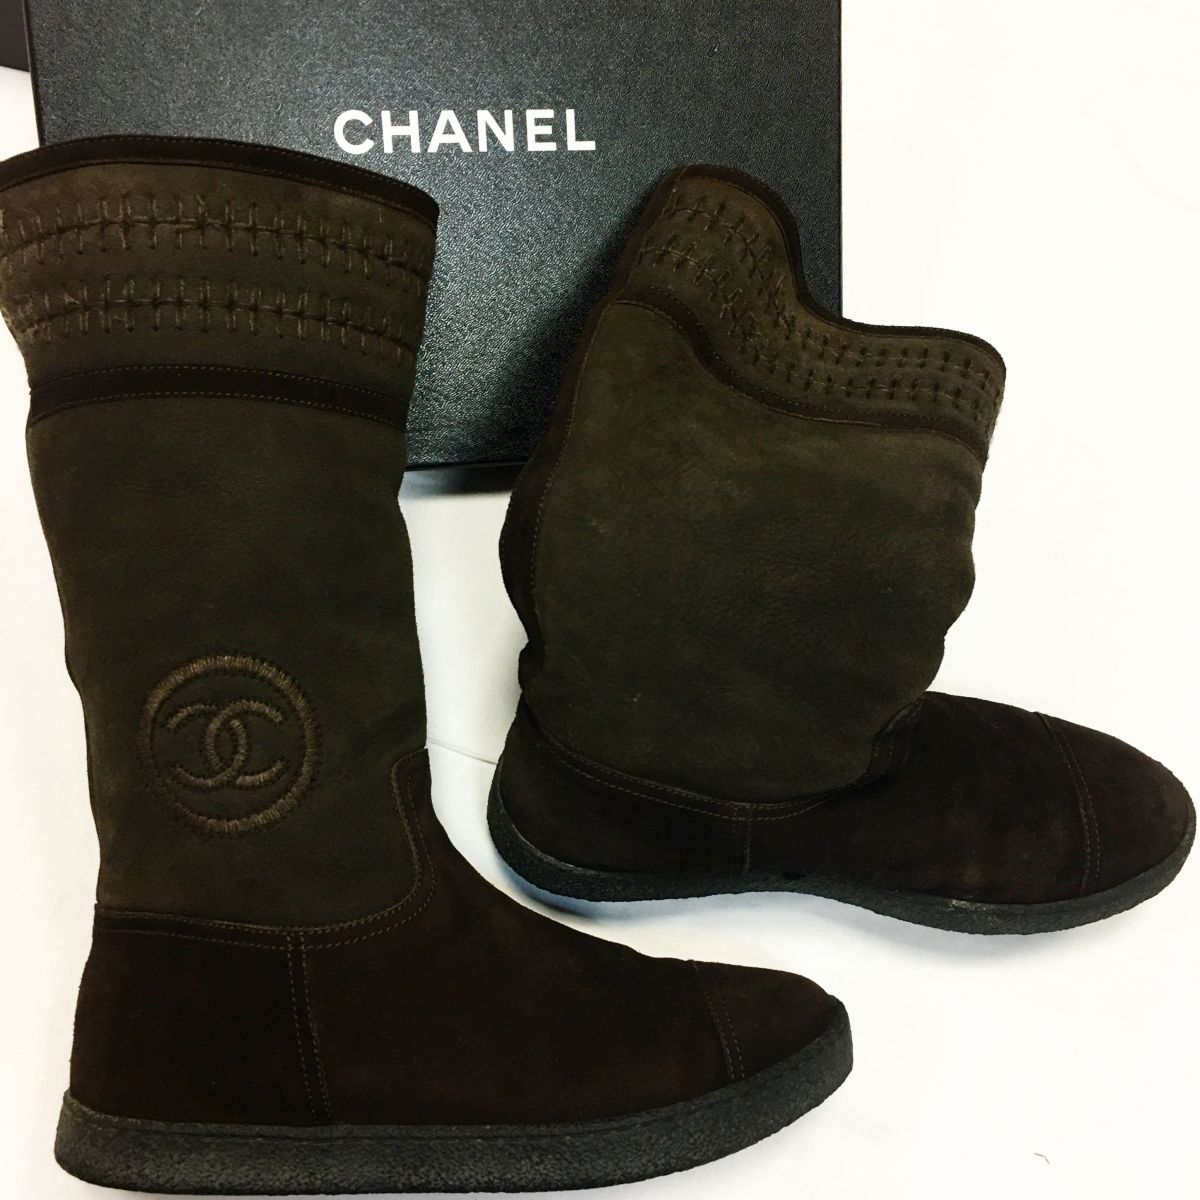 Сапоги зимние Chanel  размер 39.5 цена 15 385 руб